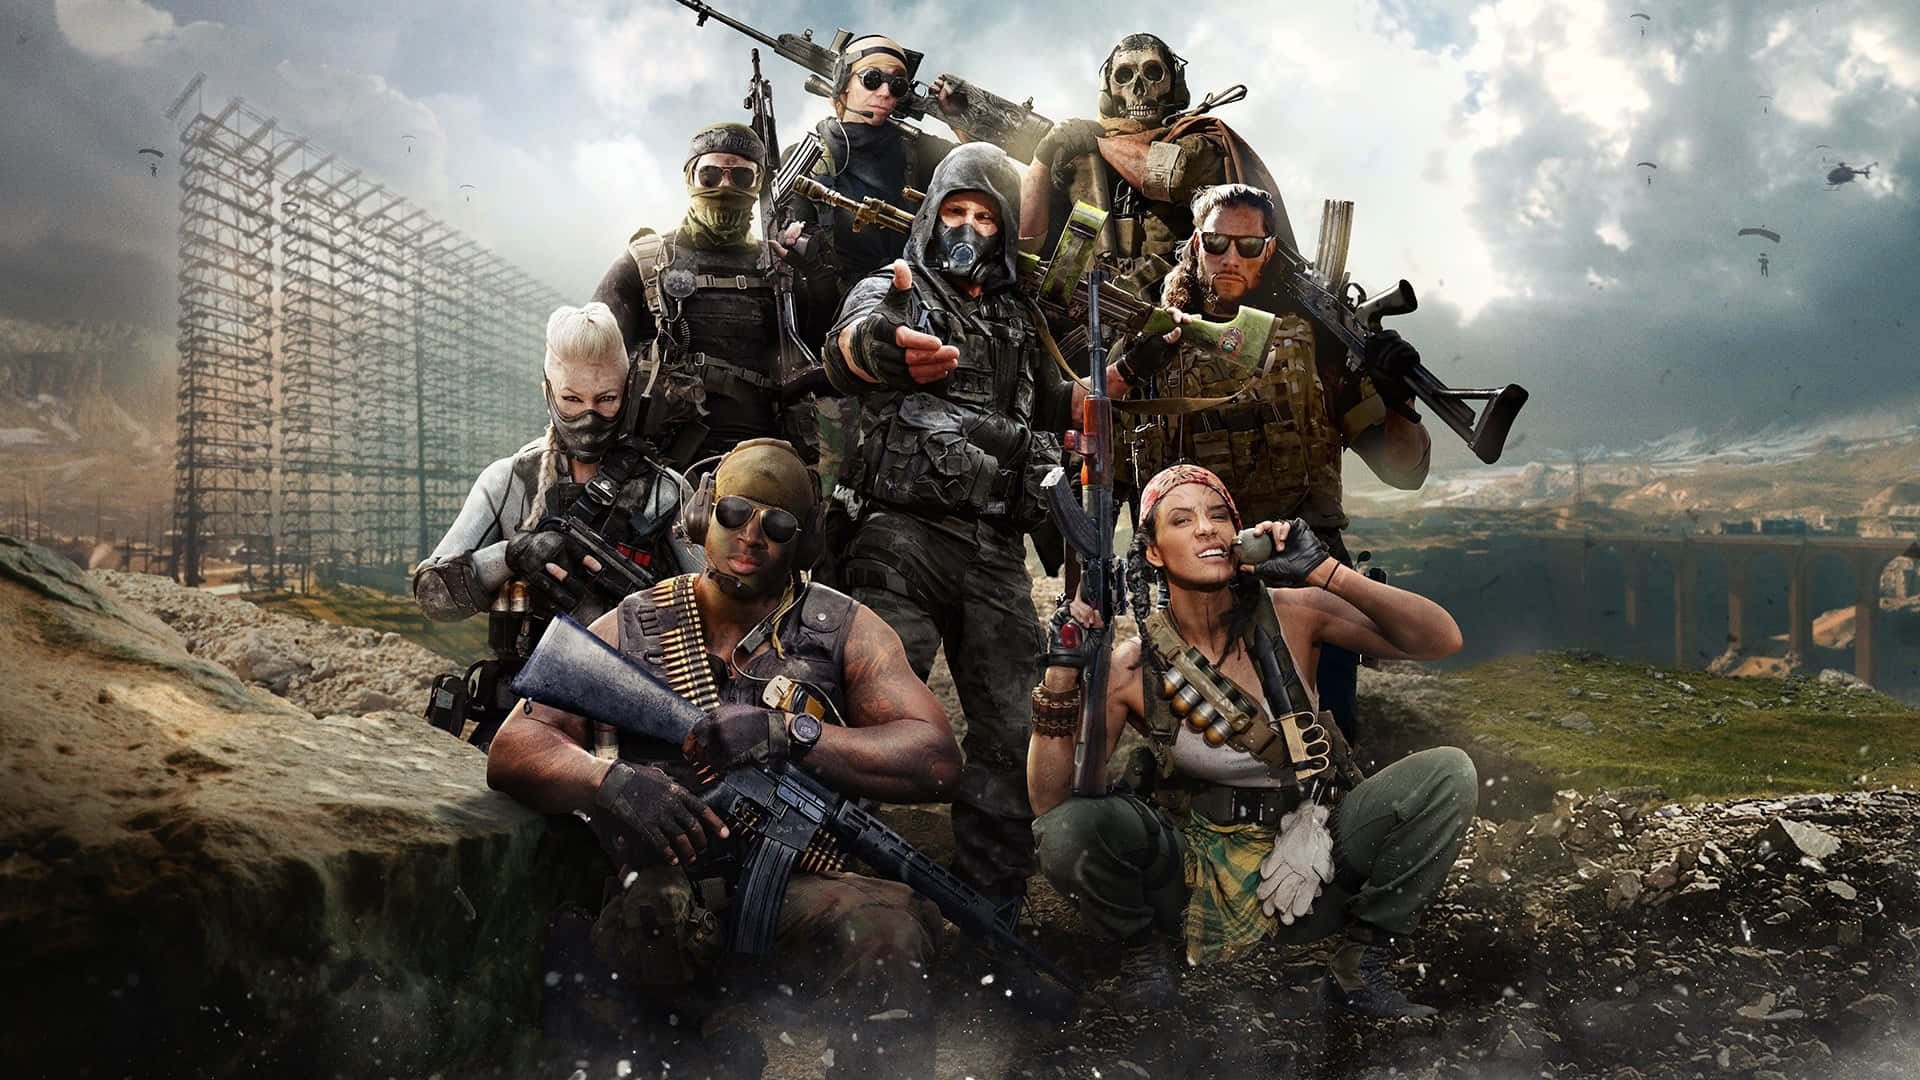 Call of Duty เกม FPS อันดับ 1 ที่ทำยอดขายทั่วโลกอย่างถล่มทลาย อะไรทำให้เกมนี้ยืนหนึ่งตลอด 20 ปี